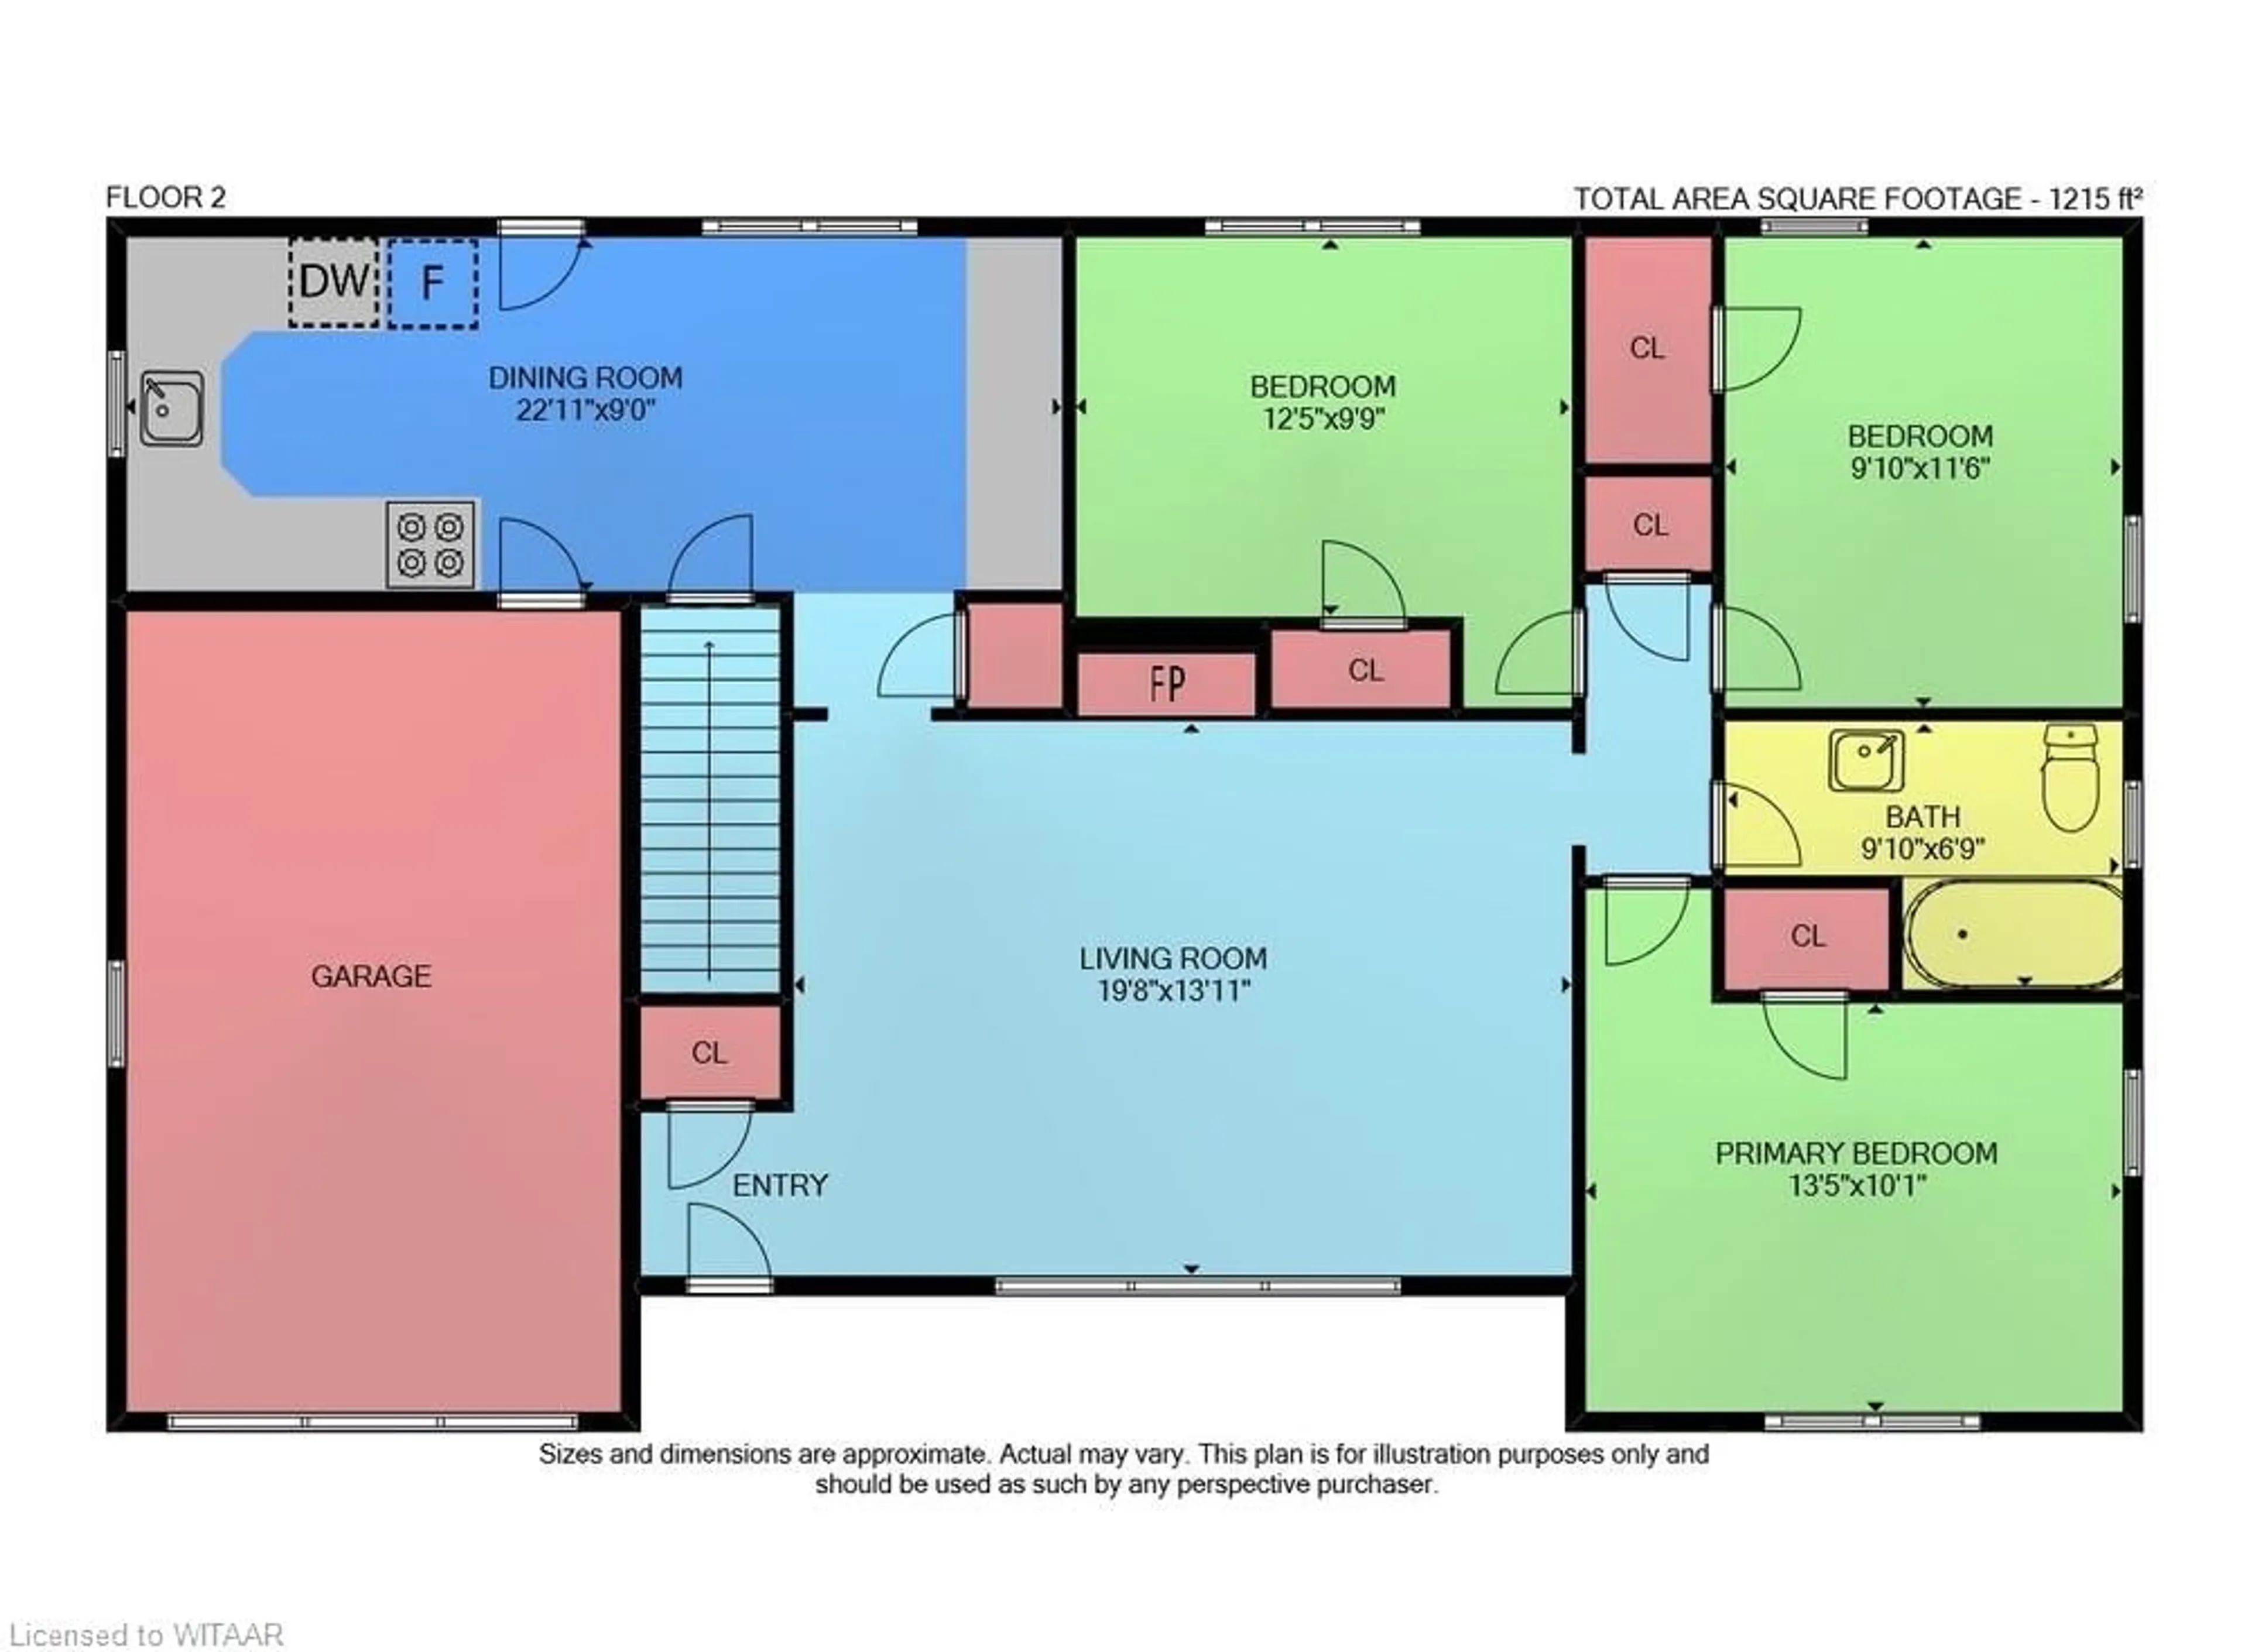 Floor plan for 9 Parkwood Dr, Tillsonburg Ontario N4G 2B7